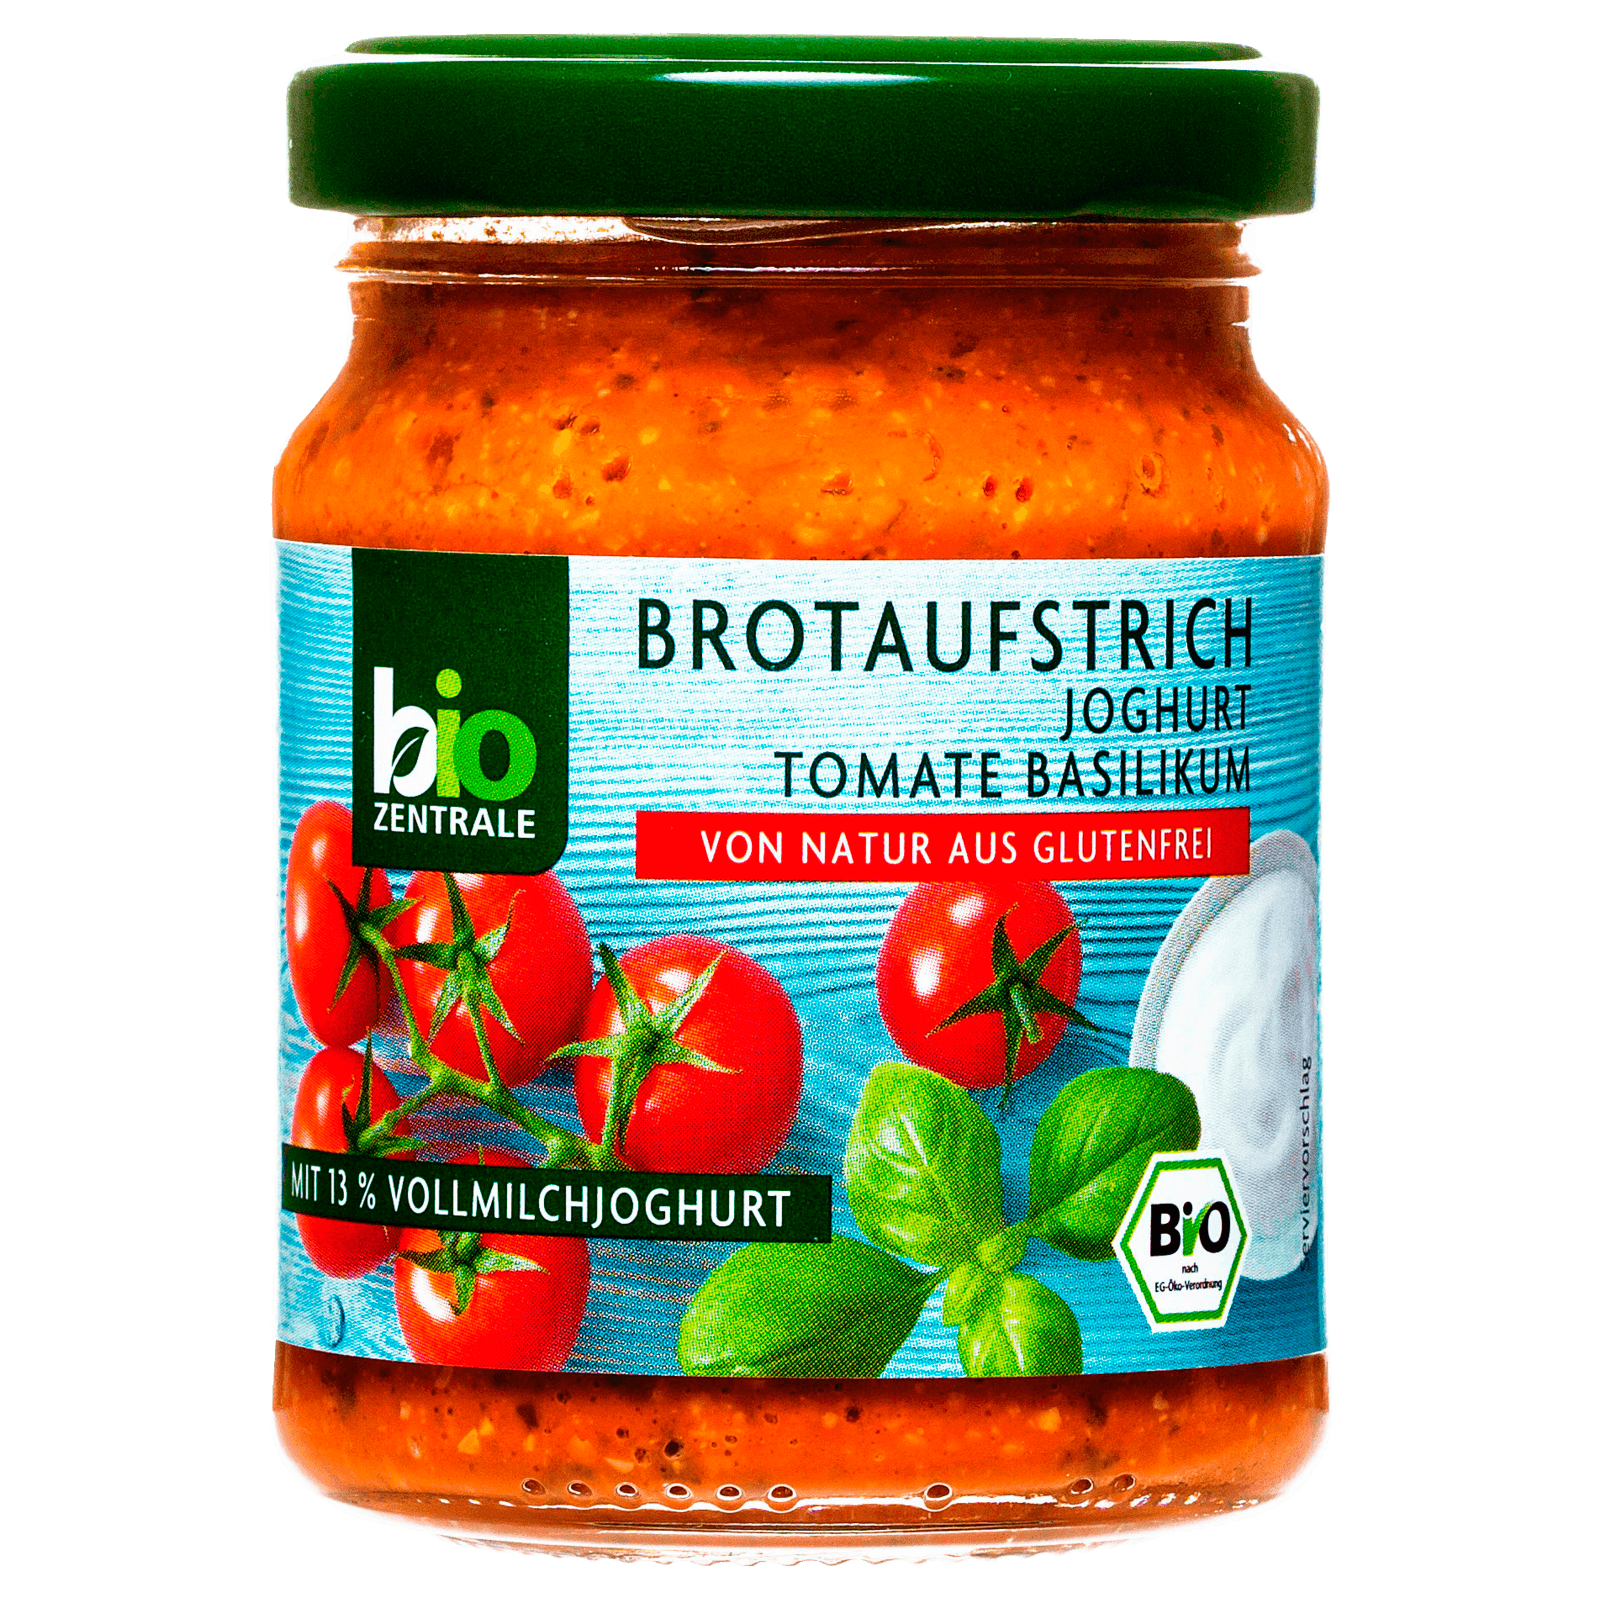 Biozentrale Bio Brotaufstrich Joghurt Tomate-Basilikum 125g  für 2.49 EUR